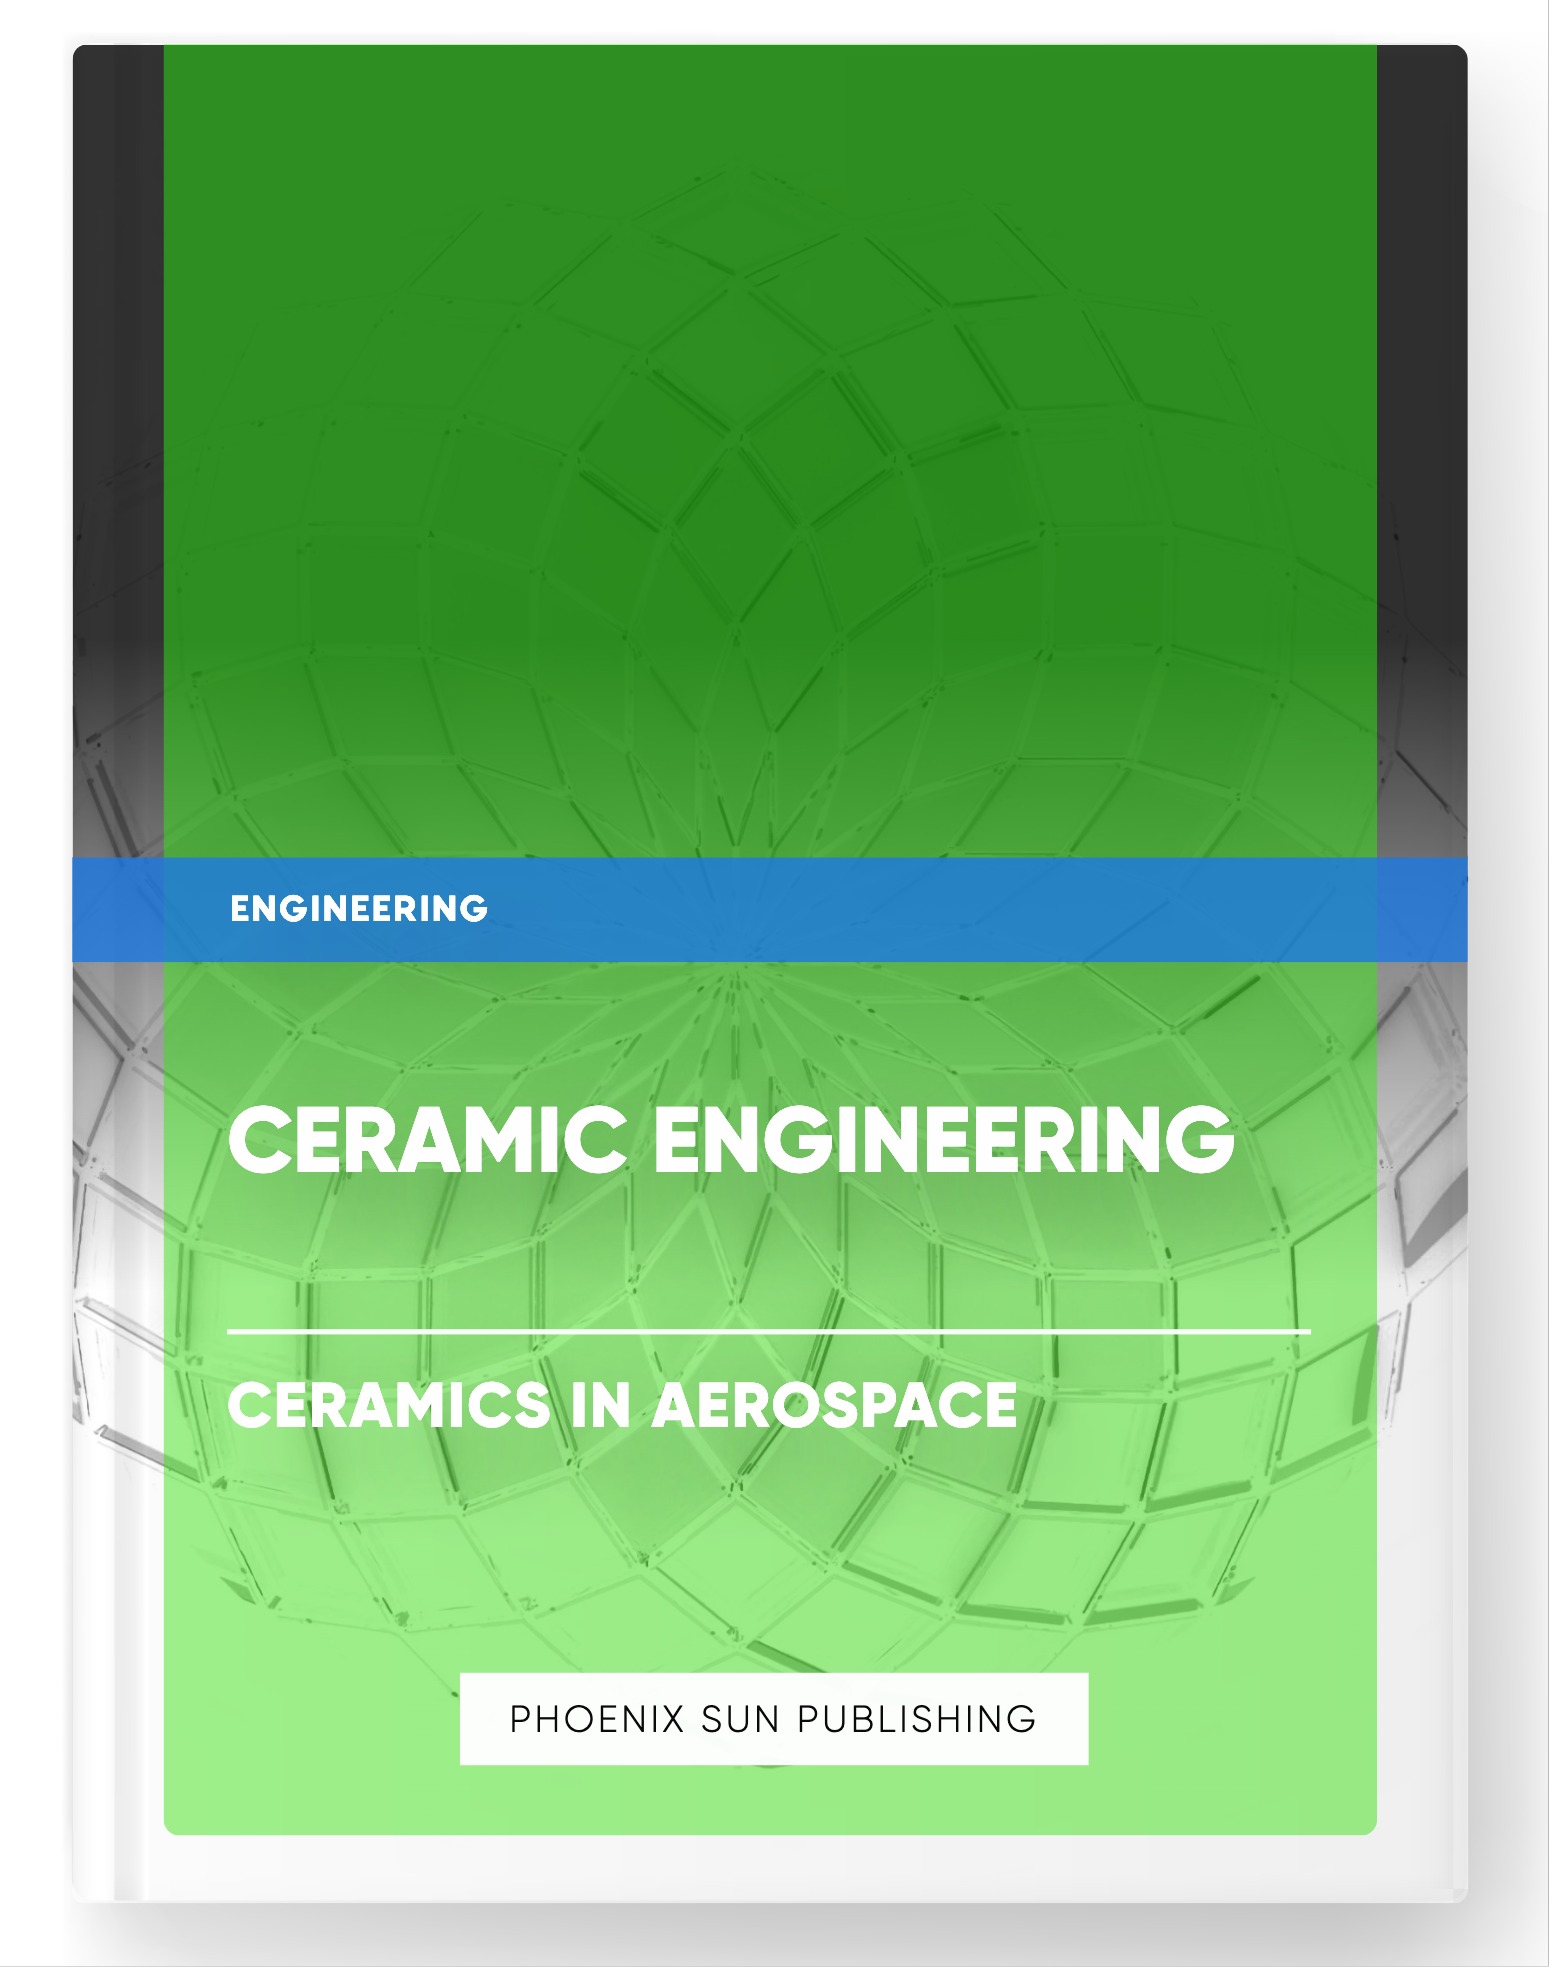 Ceramic Engineering – Ceramics in Aerospace